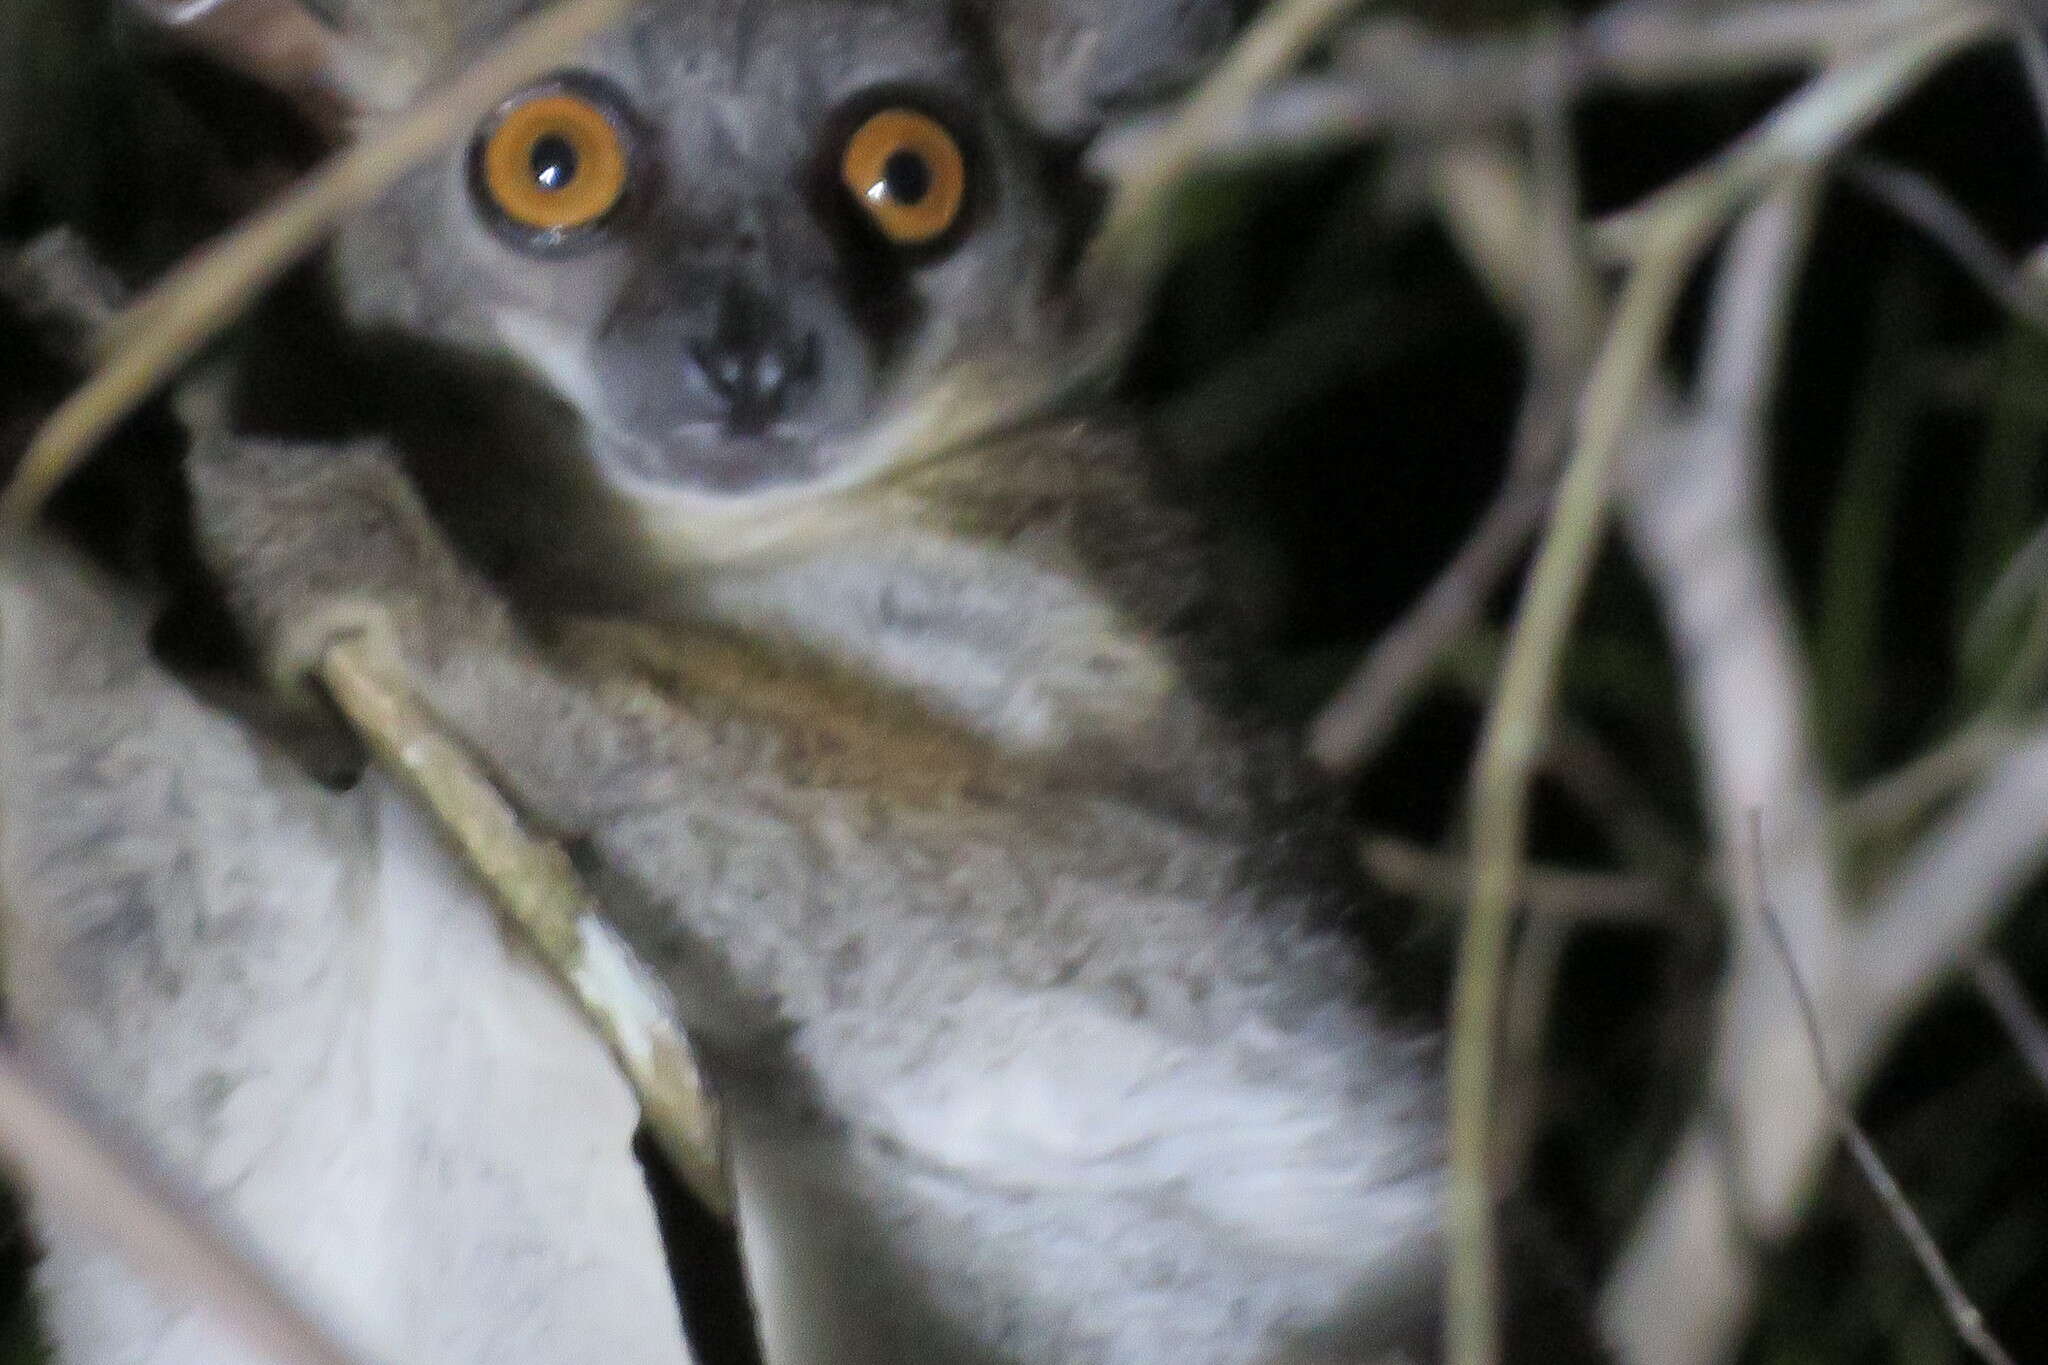 Image of Pale Fork-crowned Lemur